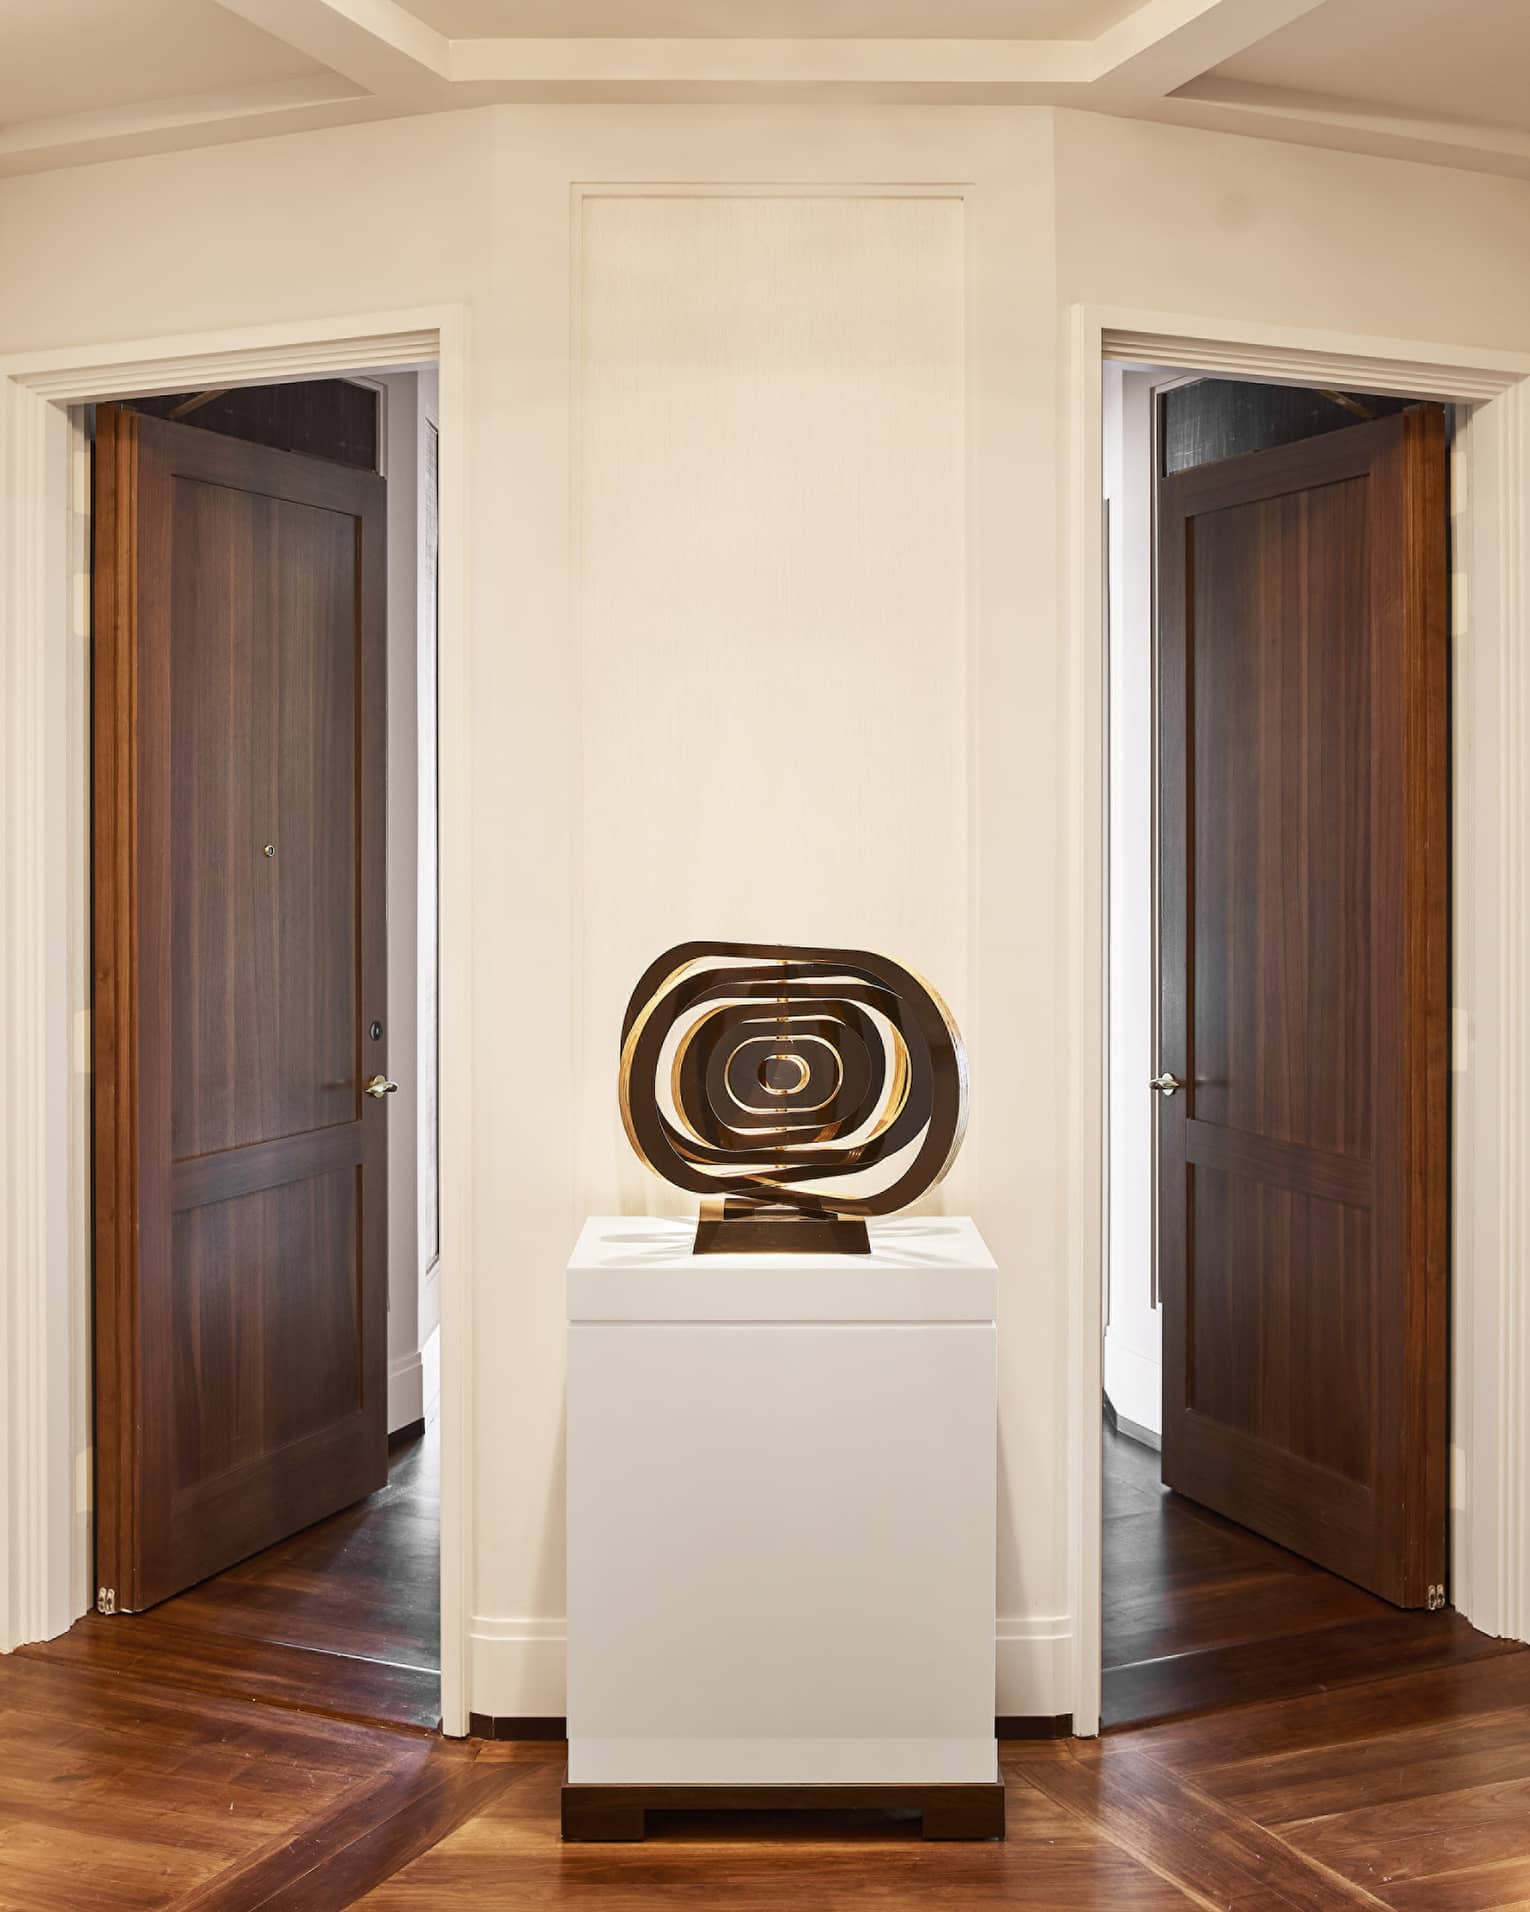 Abstract art sculpture on display in between two wooden doors